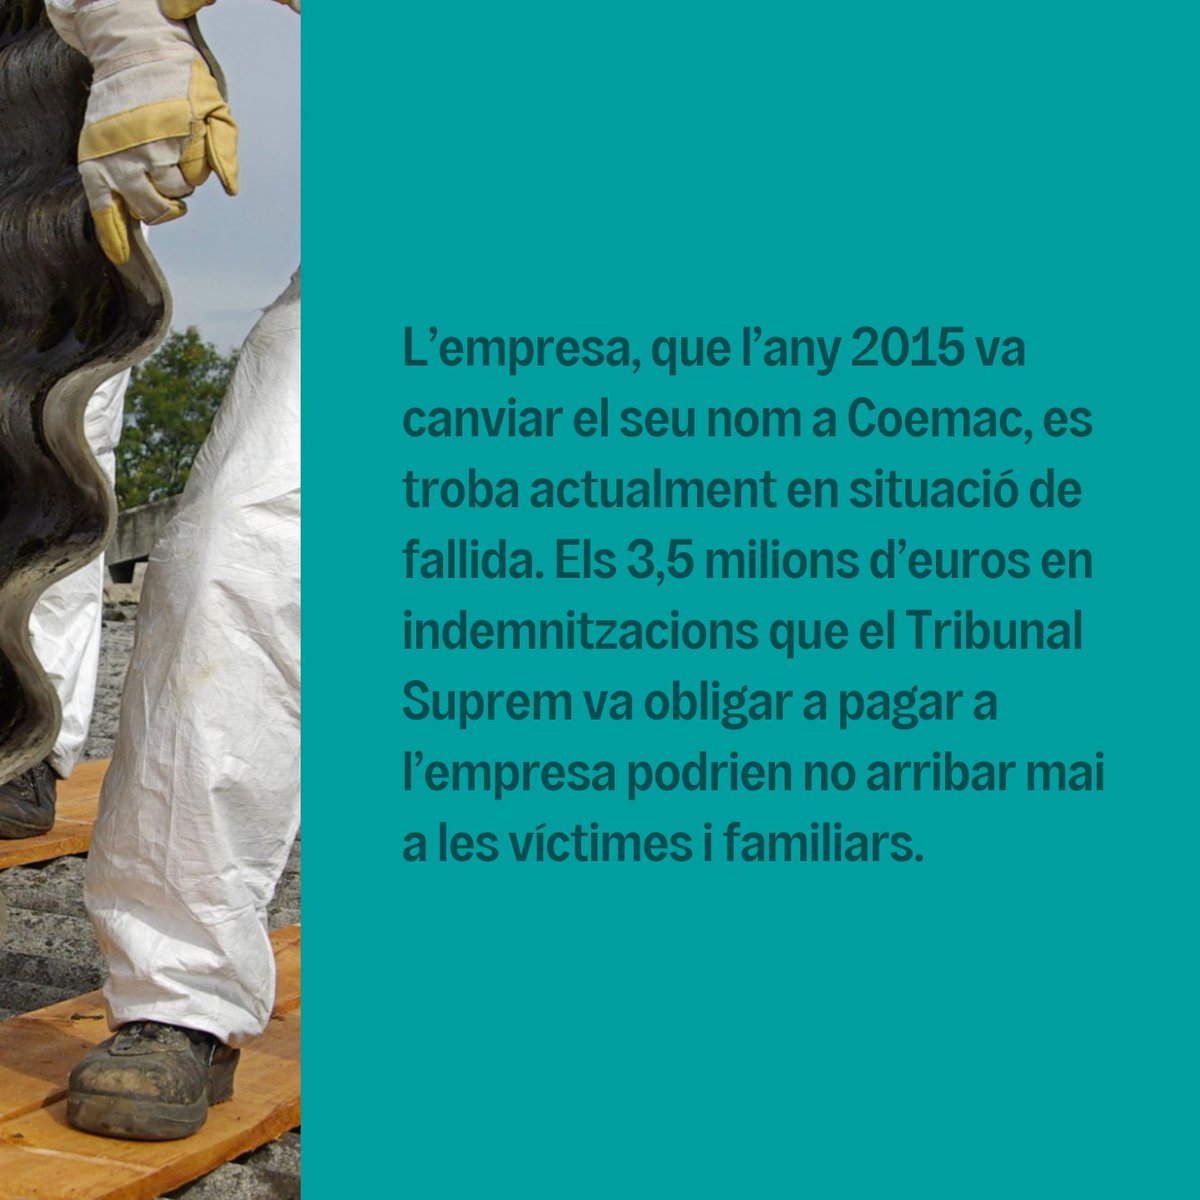 👉🏼 La fàbrica d’Uralita de Cerdanyola del Vallès va estar en funcionament durant més de 90 anys. Coneix un dels casos de justícia ambiental més importants dels darrers anys 🔗 shorturl.at/aeikr

#Uralita #Cerdanyola #SostenibleCat #JusticiaAmbiental